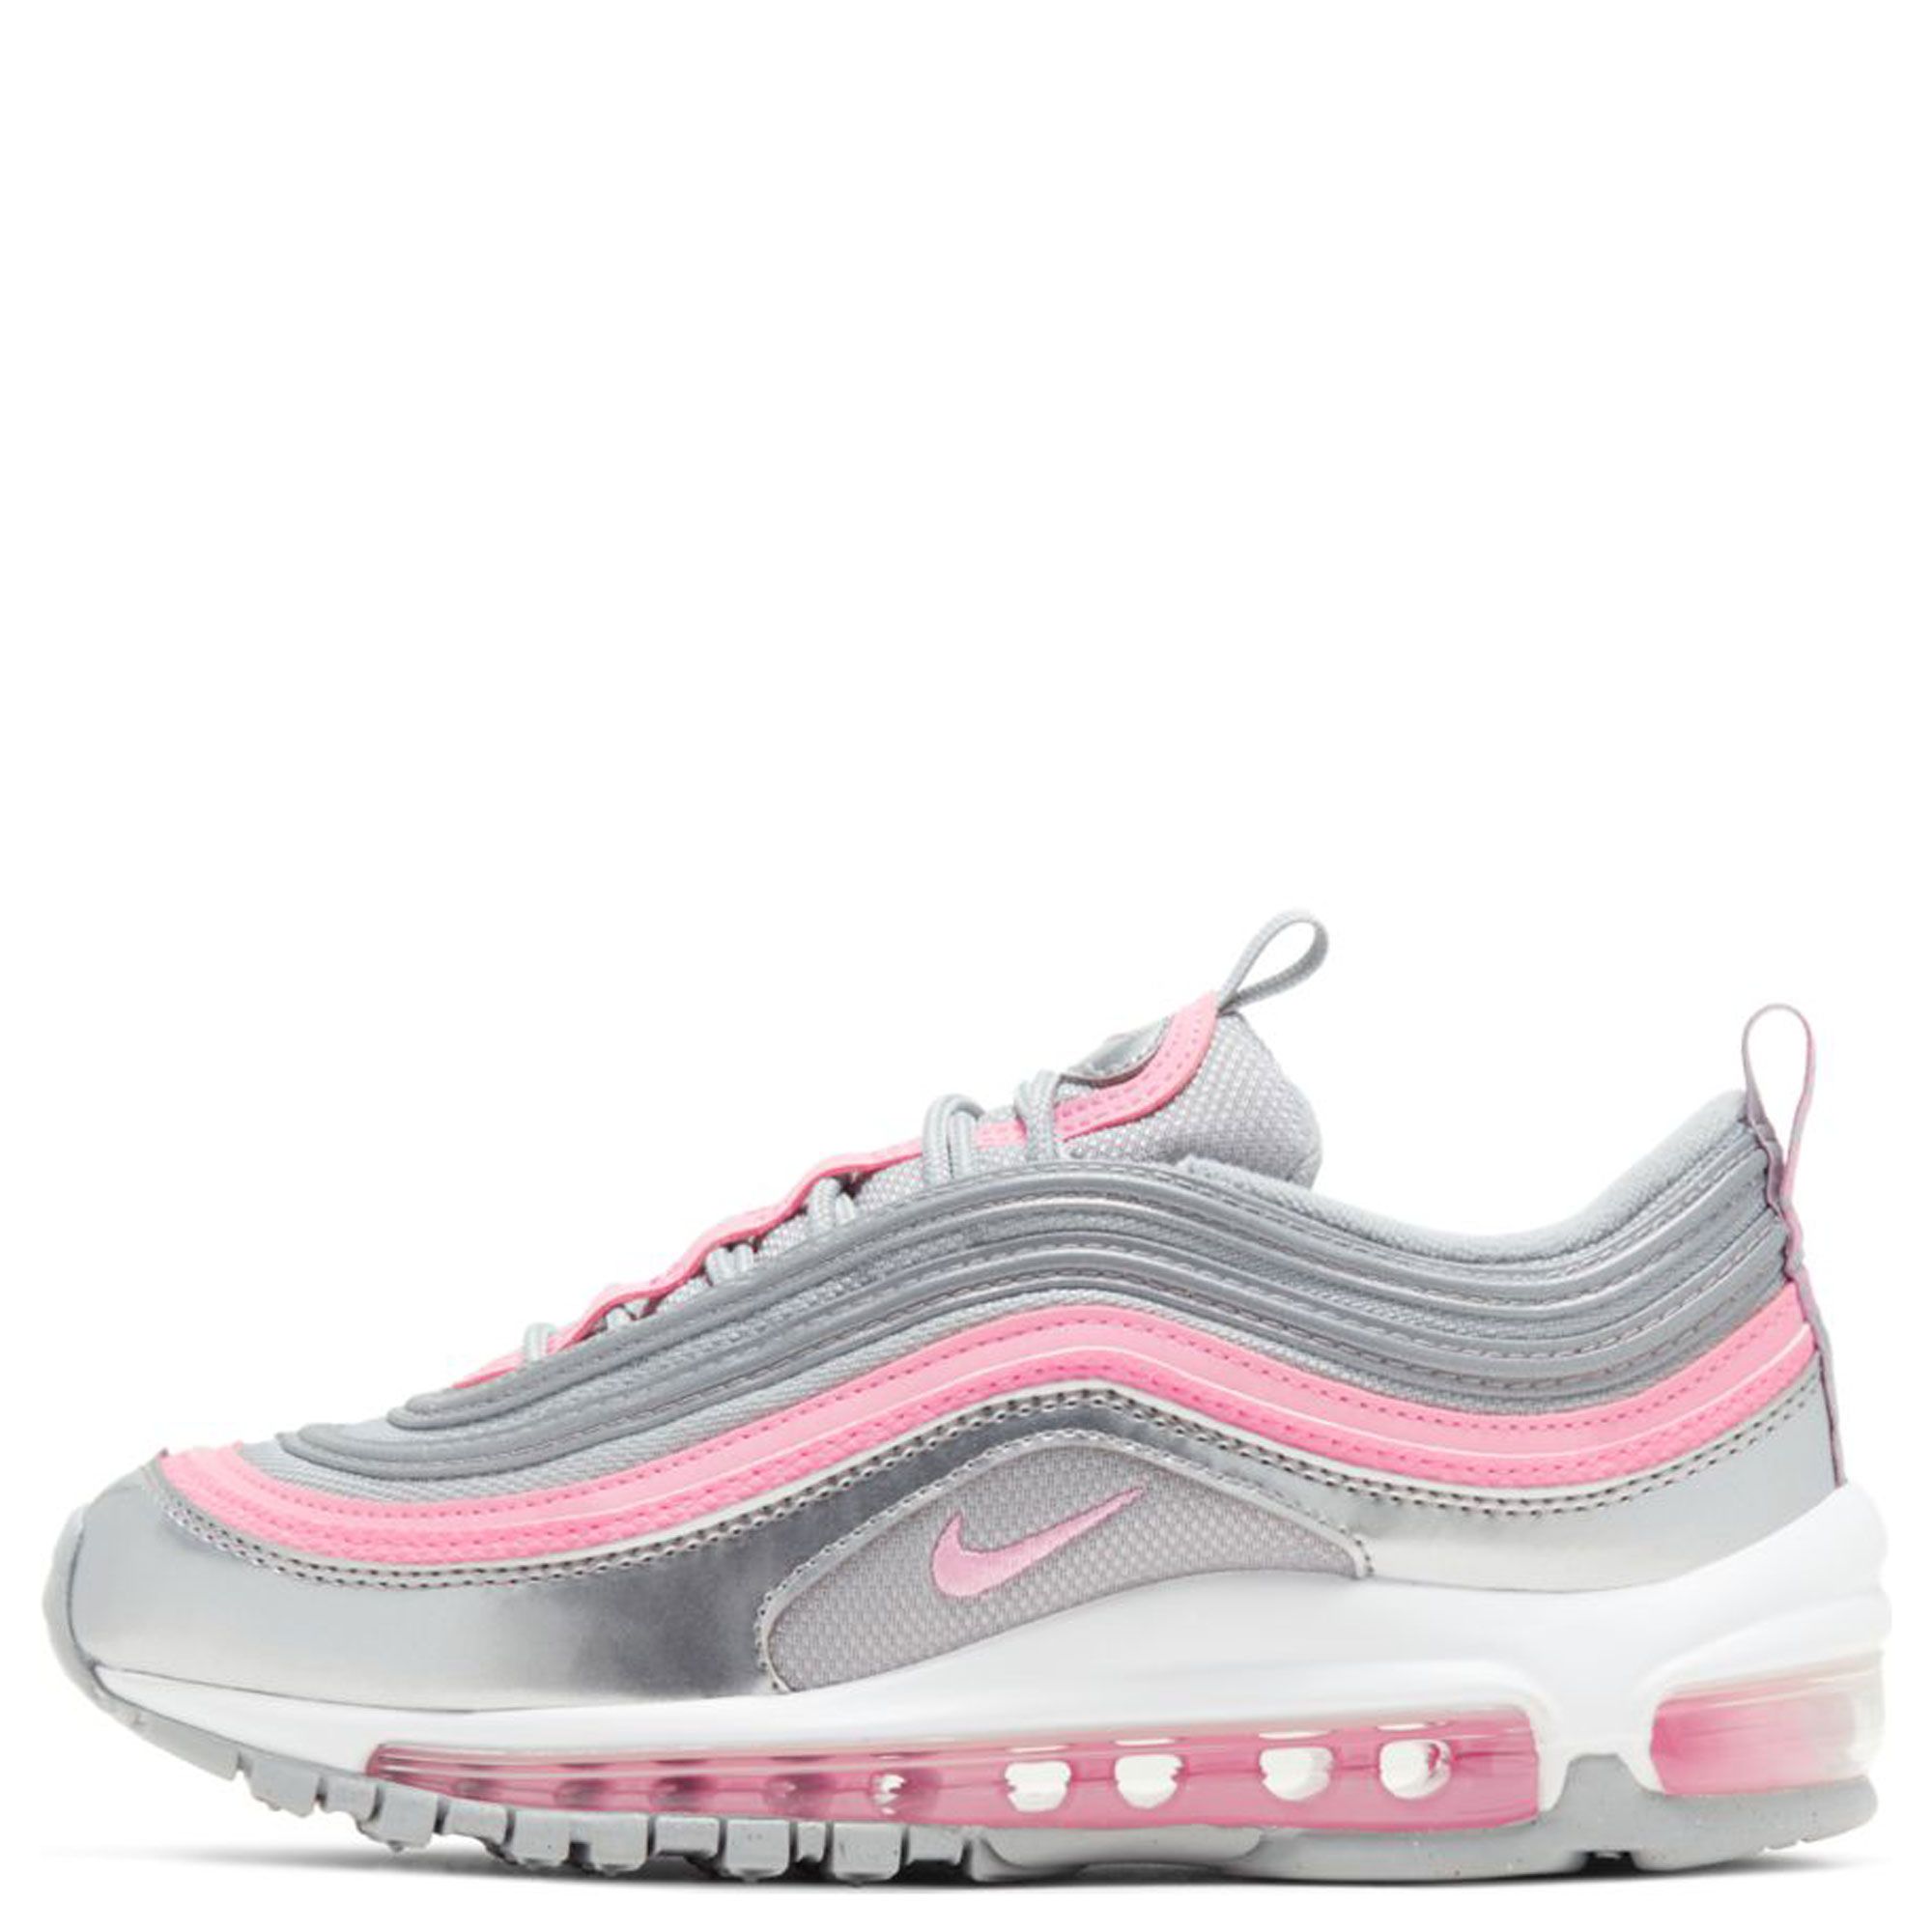 air max 97 pink grey